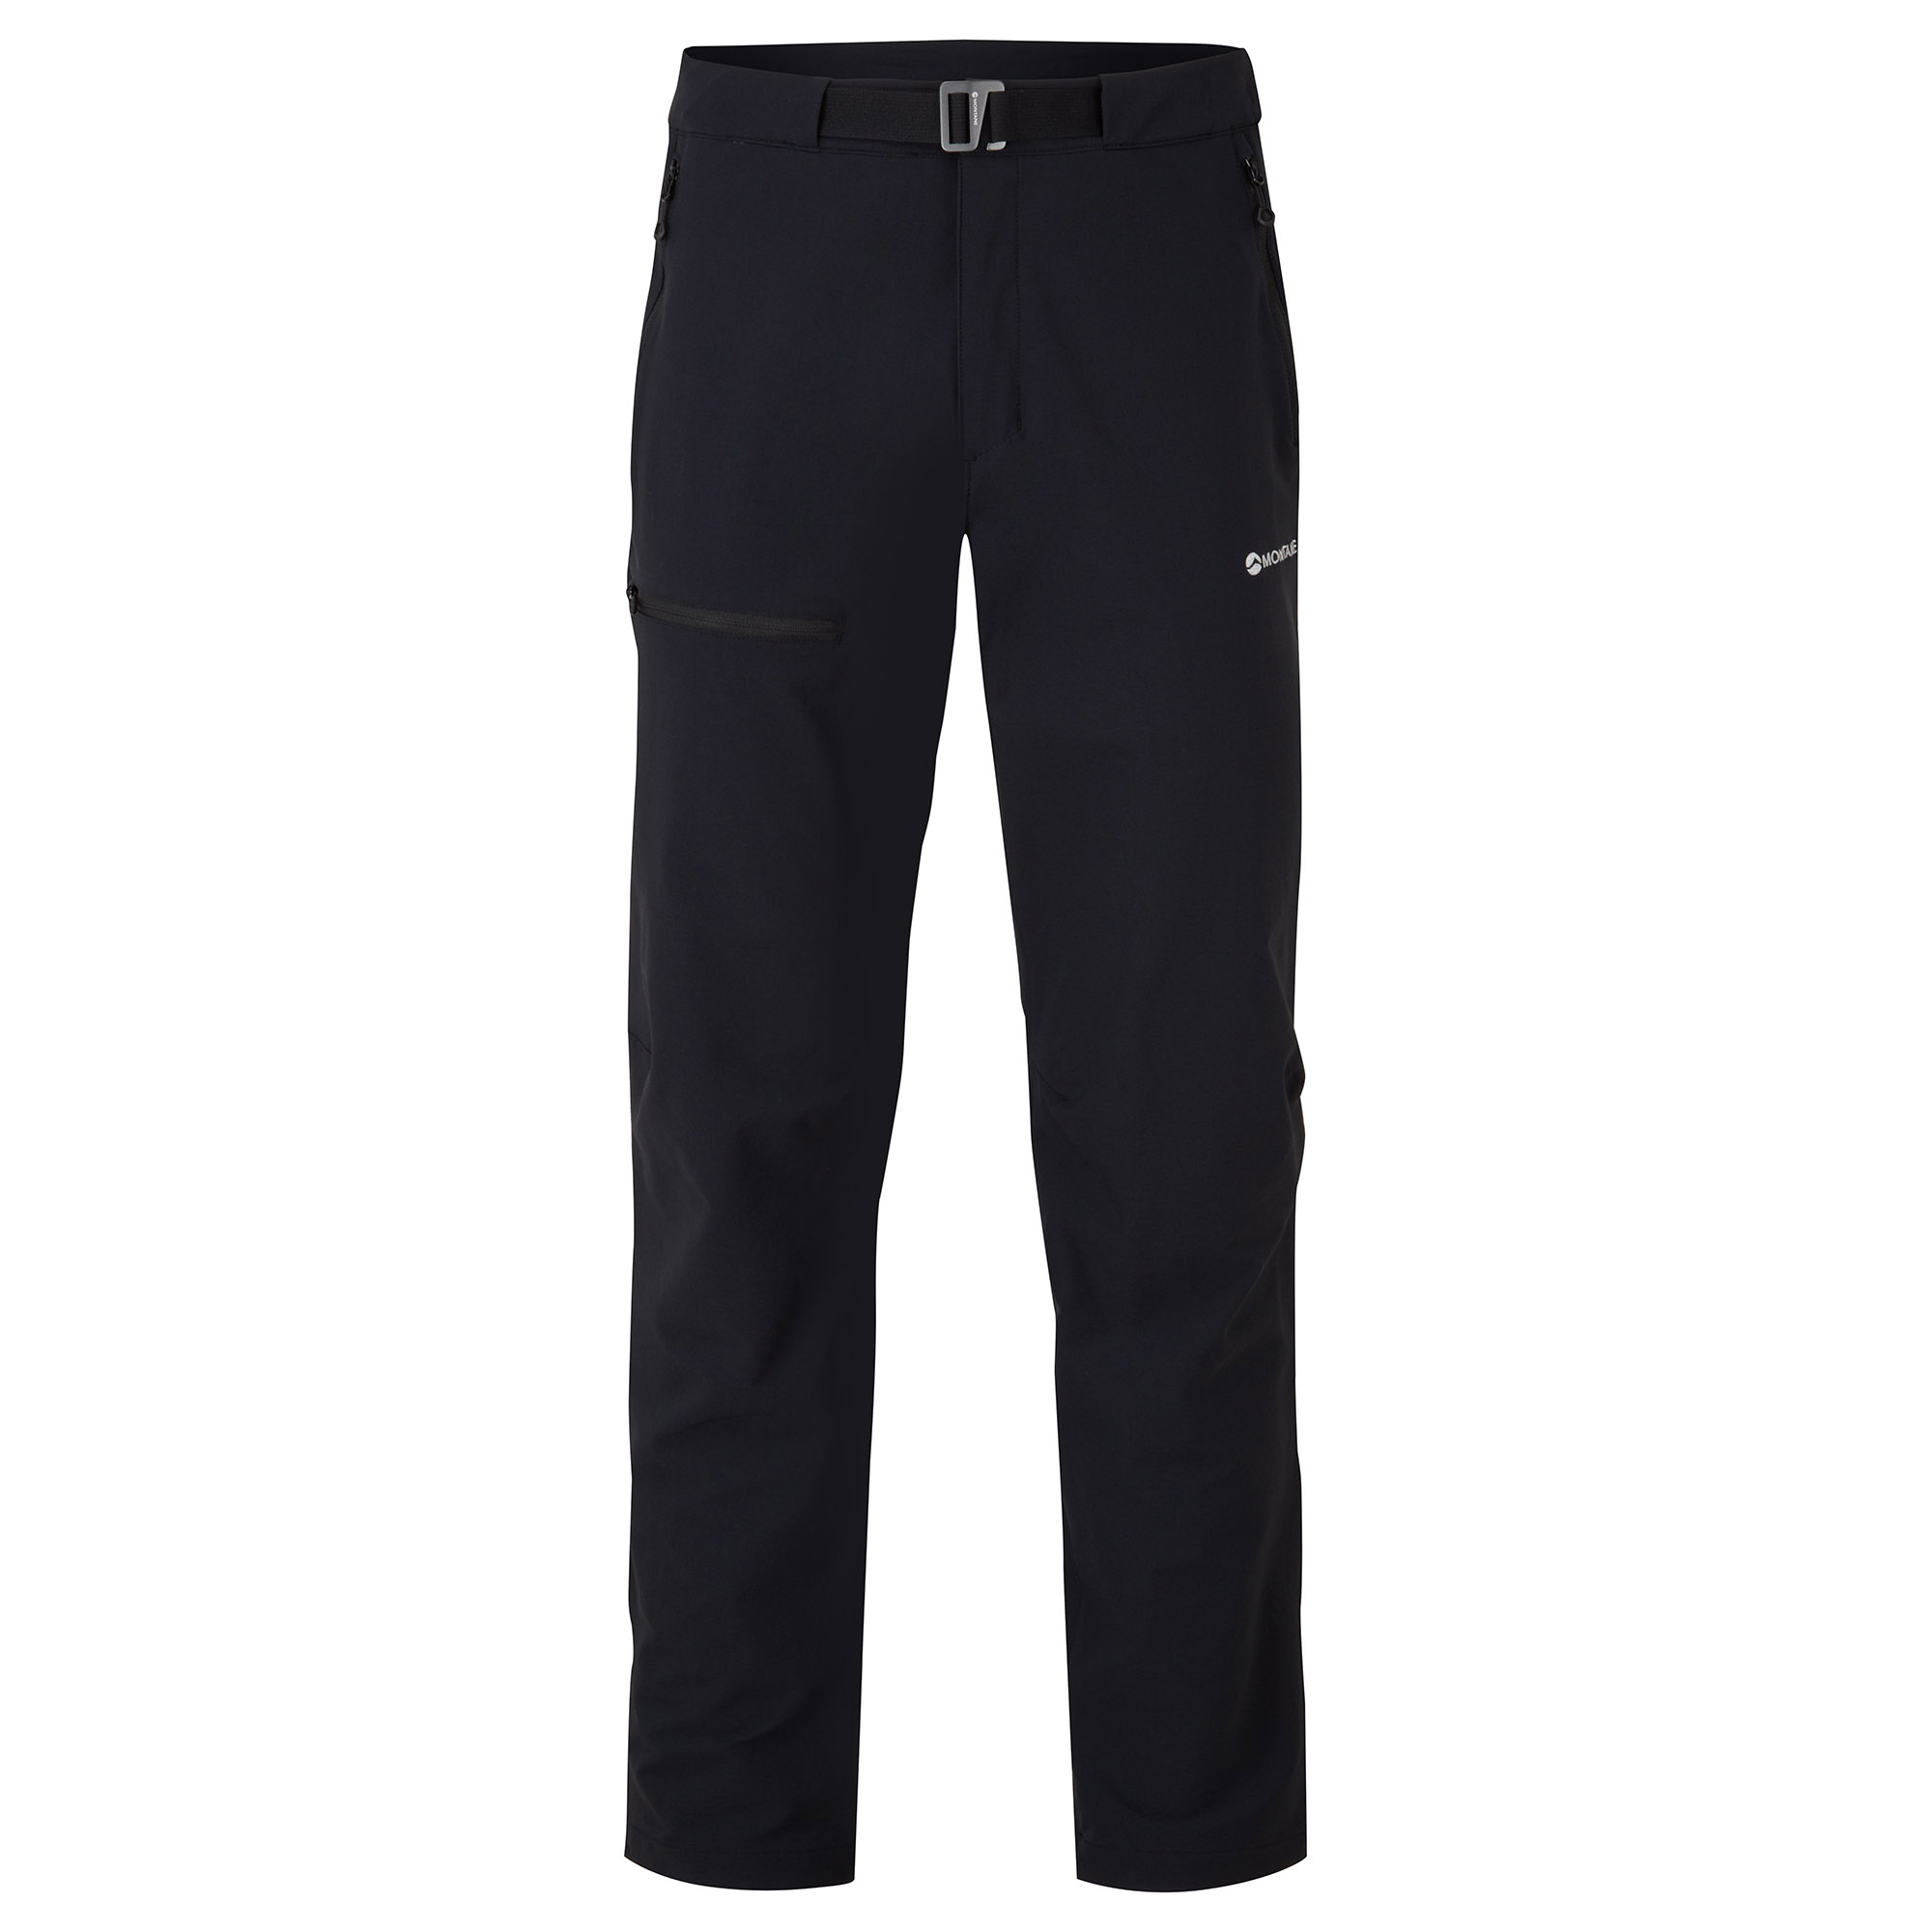 Montane pánské softshellové kalhoty Tenacity Pants - Prodloužené Nohavice Barva: black, Velikost: 34